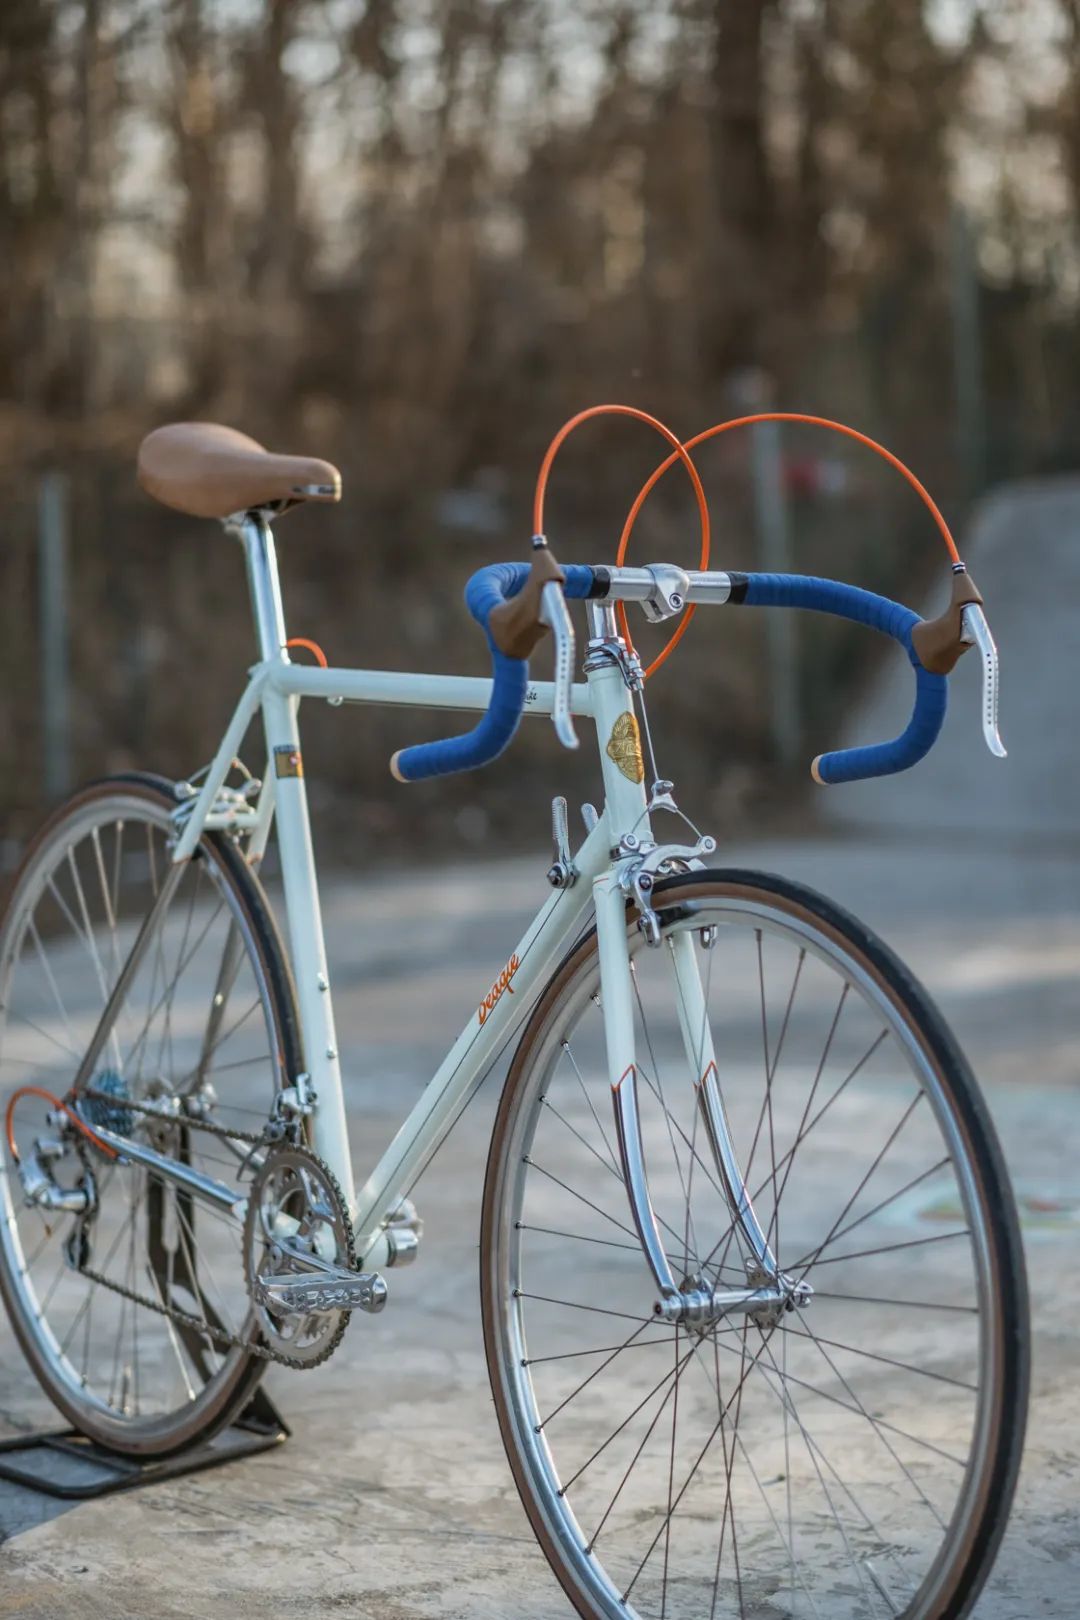 从1926年走来的经典 英伦钢架车品牌Pashley - 产品 - 骑行家 - 专业自行车全媒体